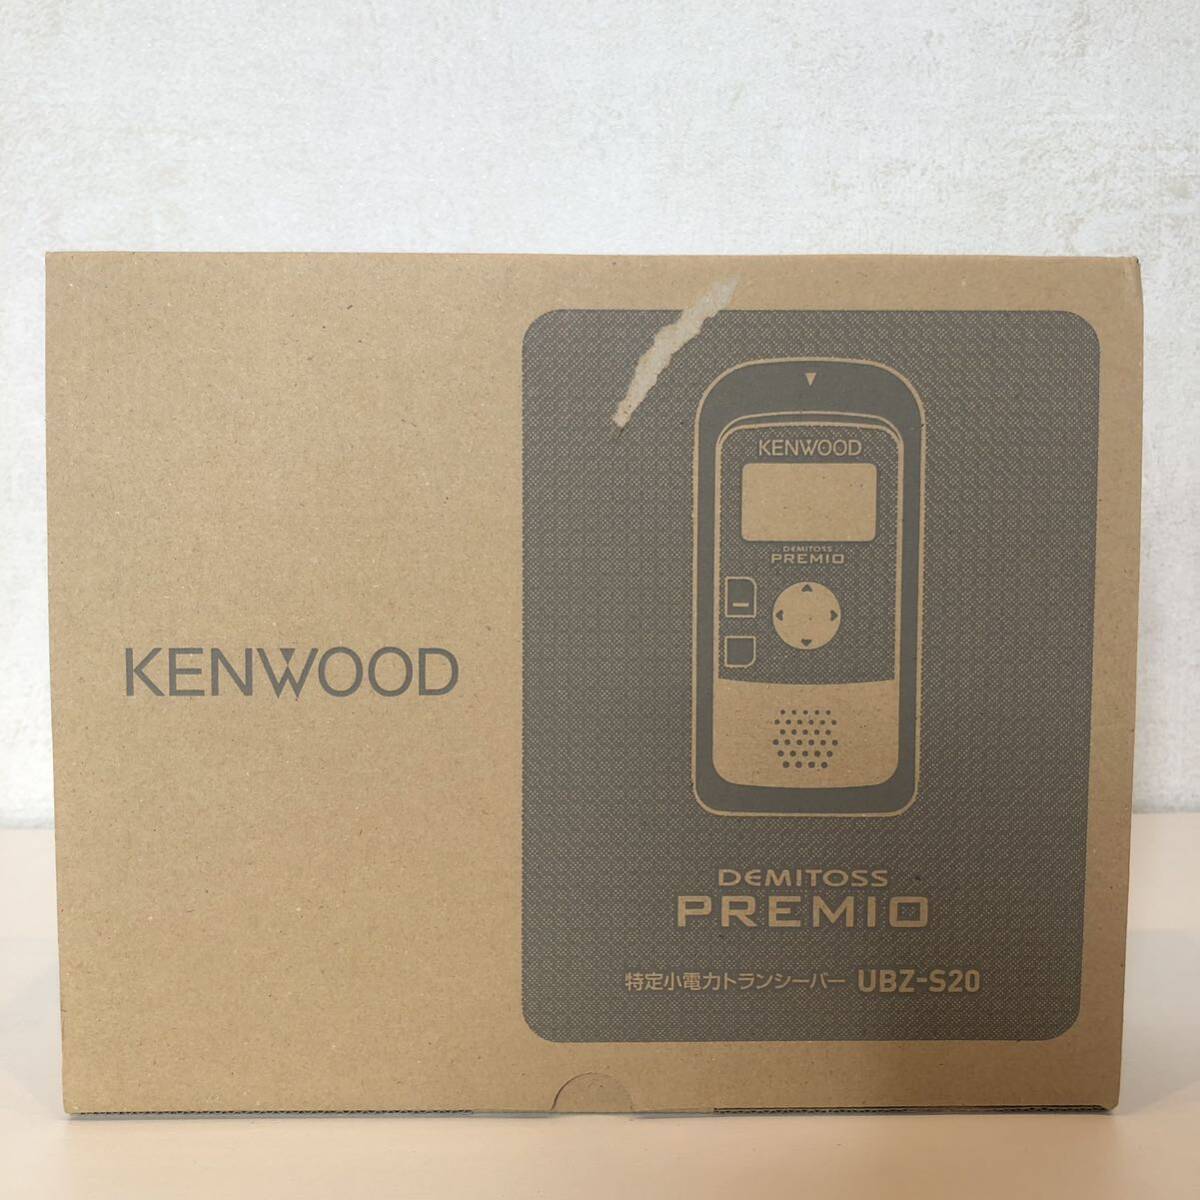 【未使用】KENWOOD DEMITOSS PREMIO UBZ-S20 デミトス プレミオ_画像3